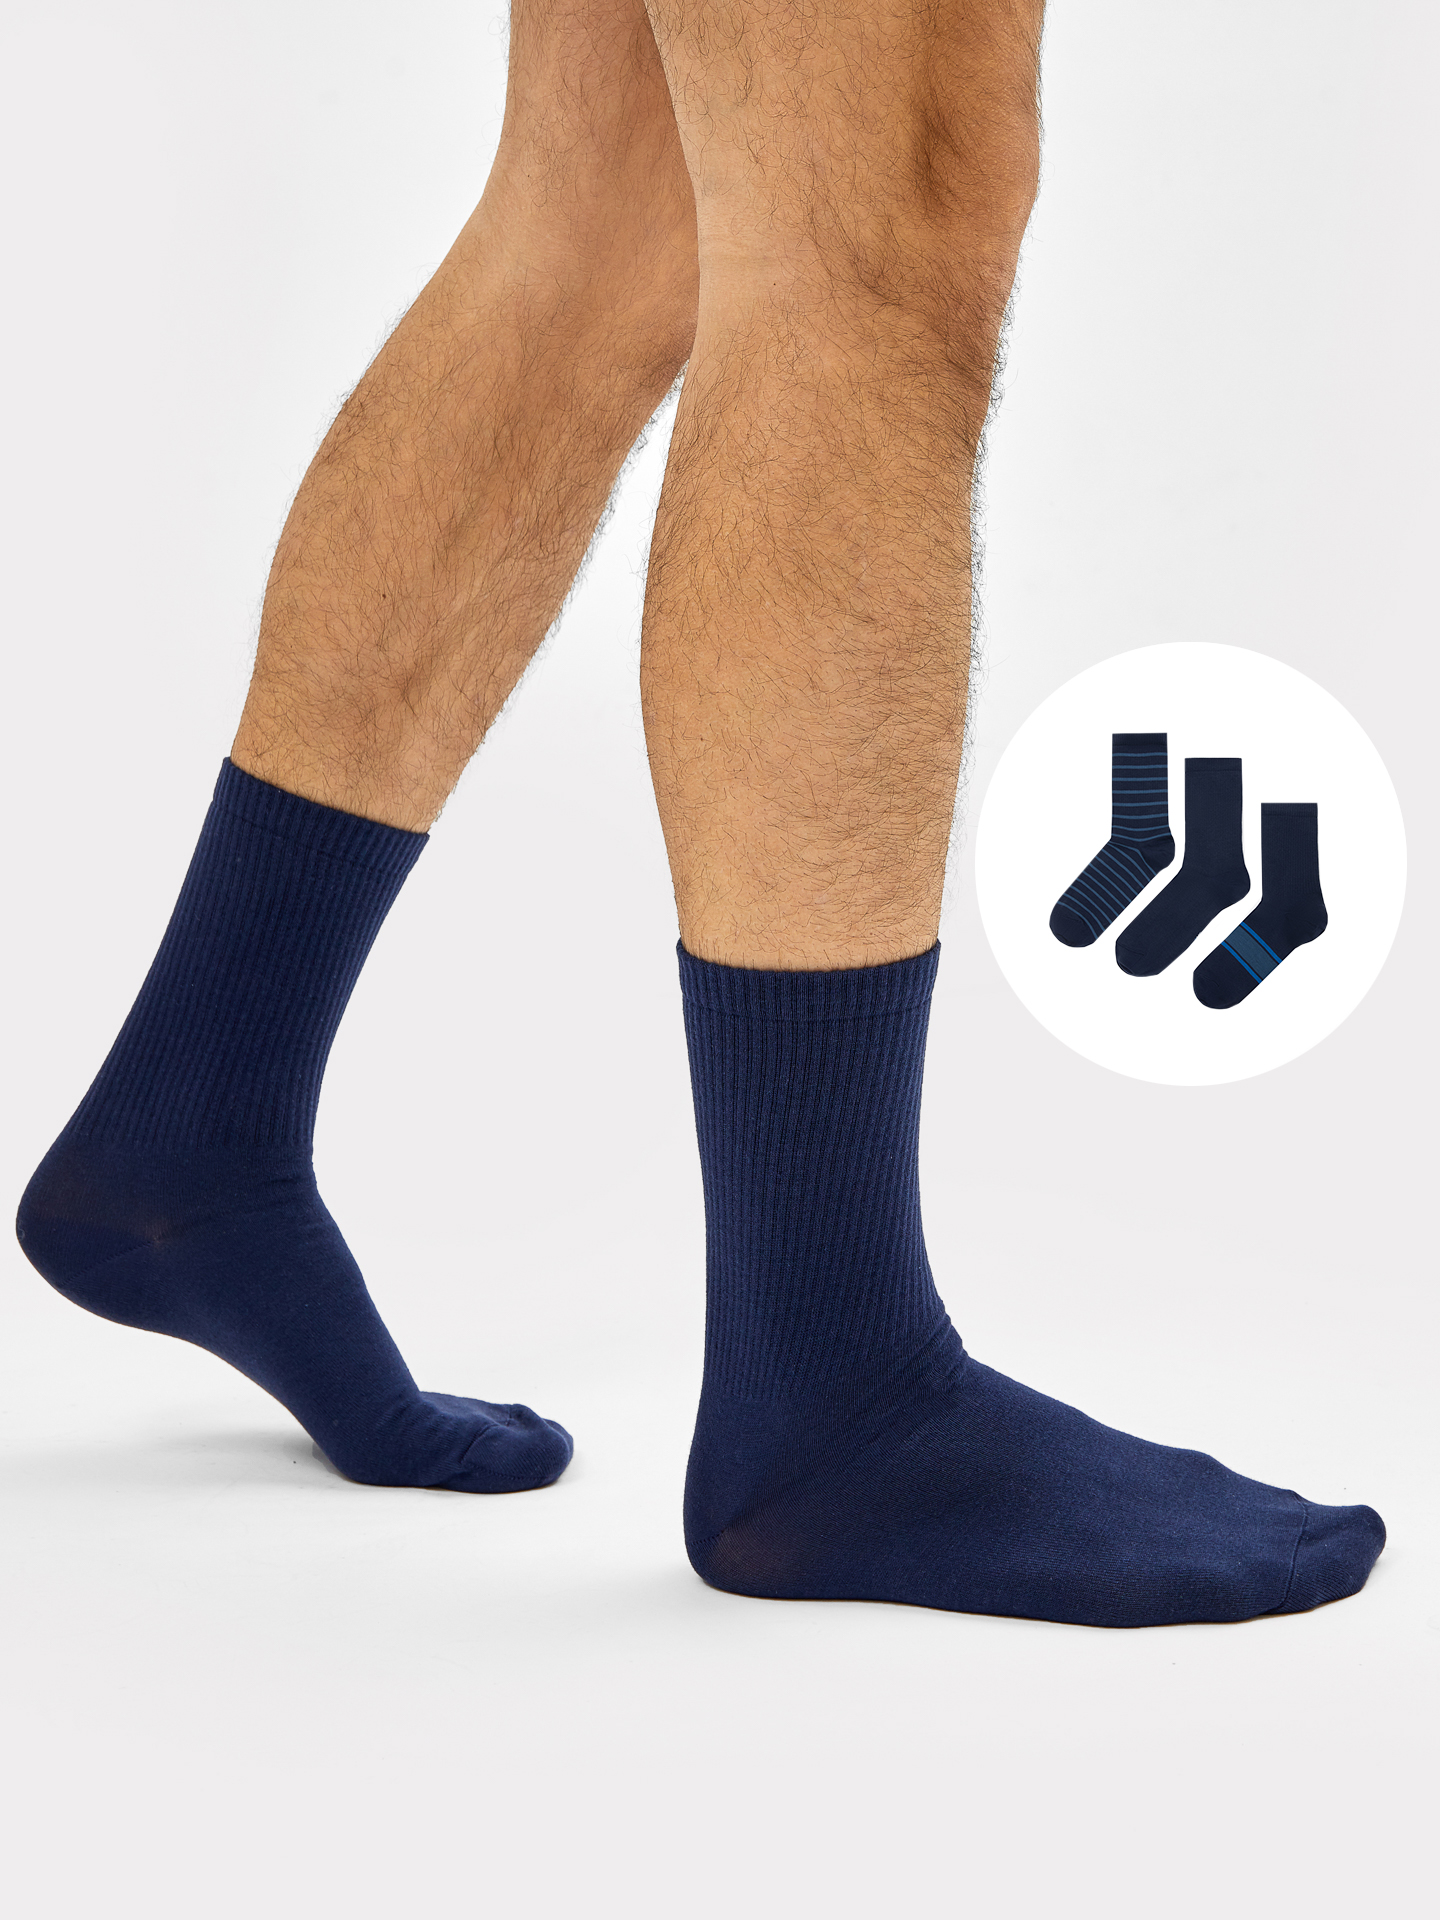 Набор мужских носков (3 шт.) синего цвета с рисунком в виде поперечных полосок